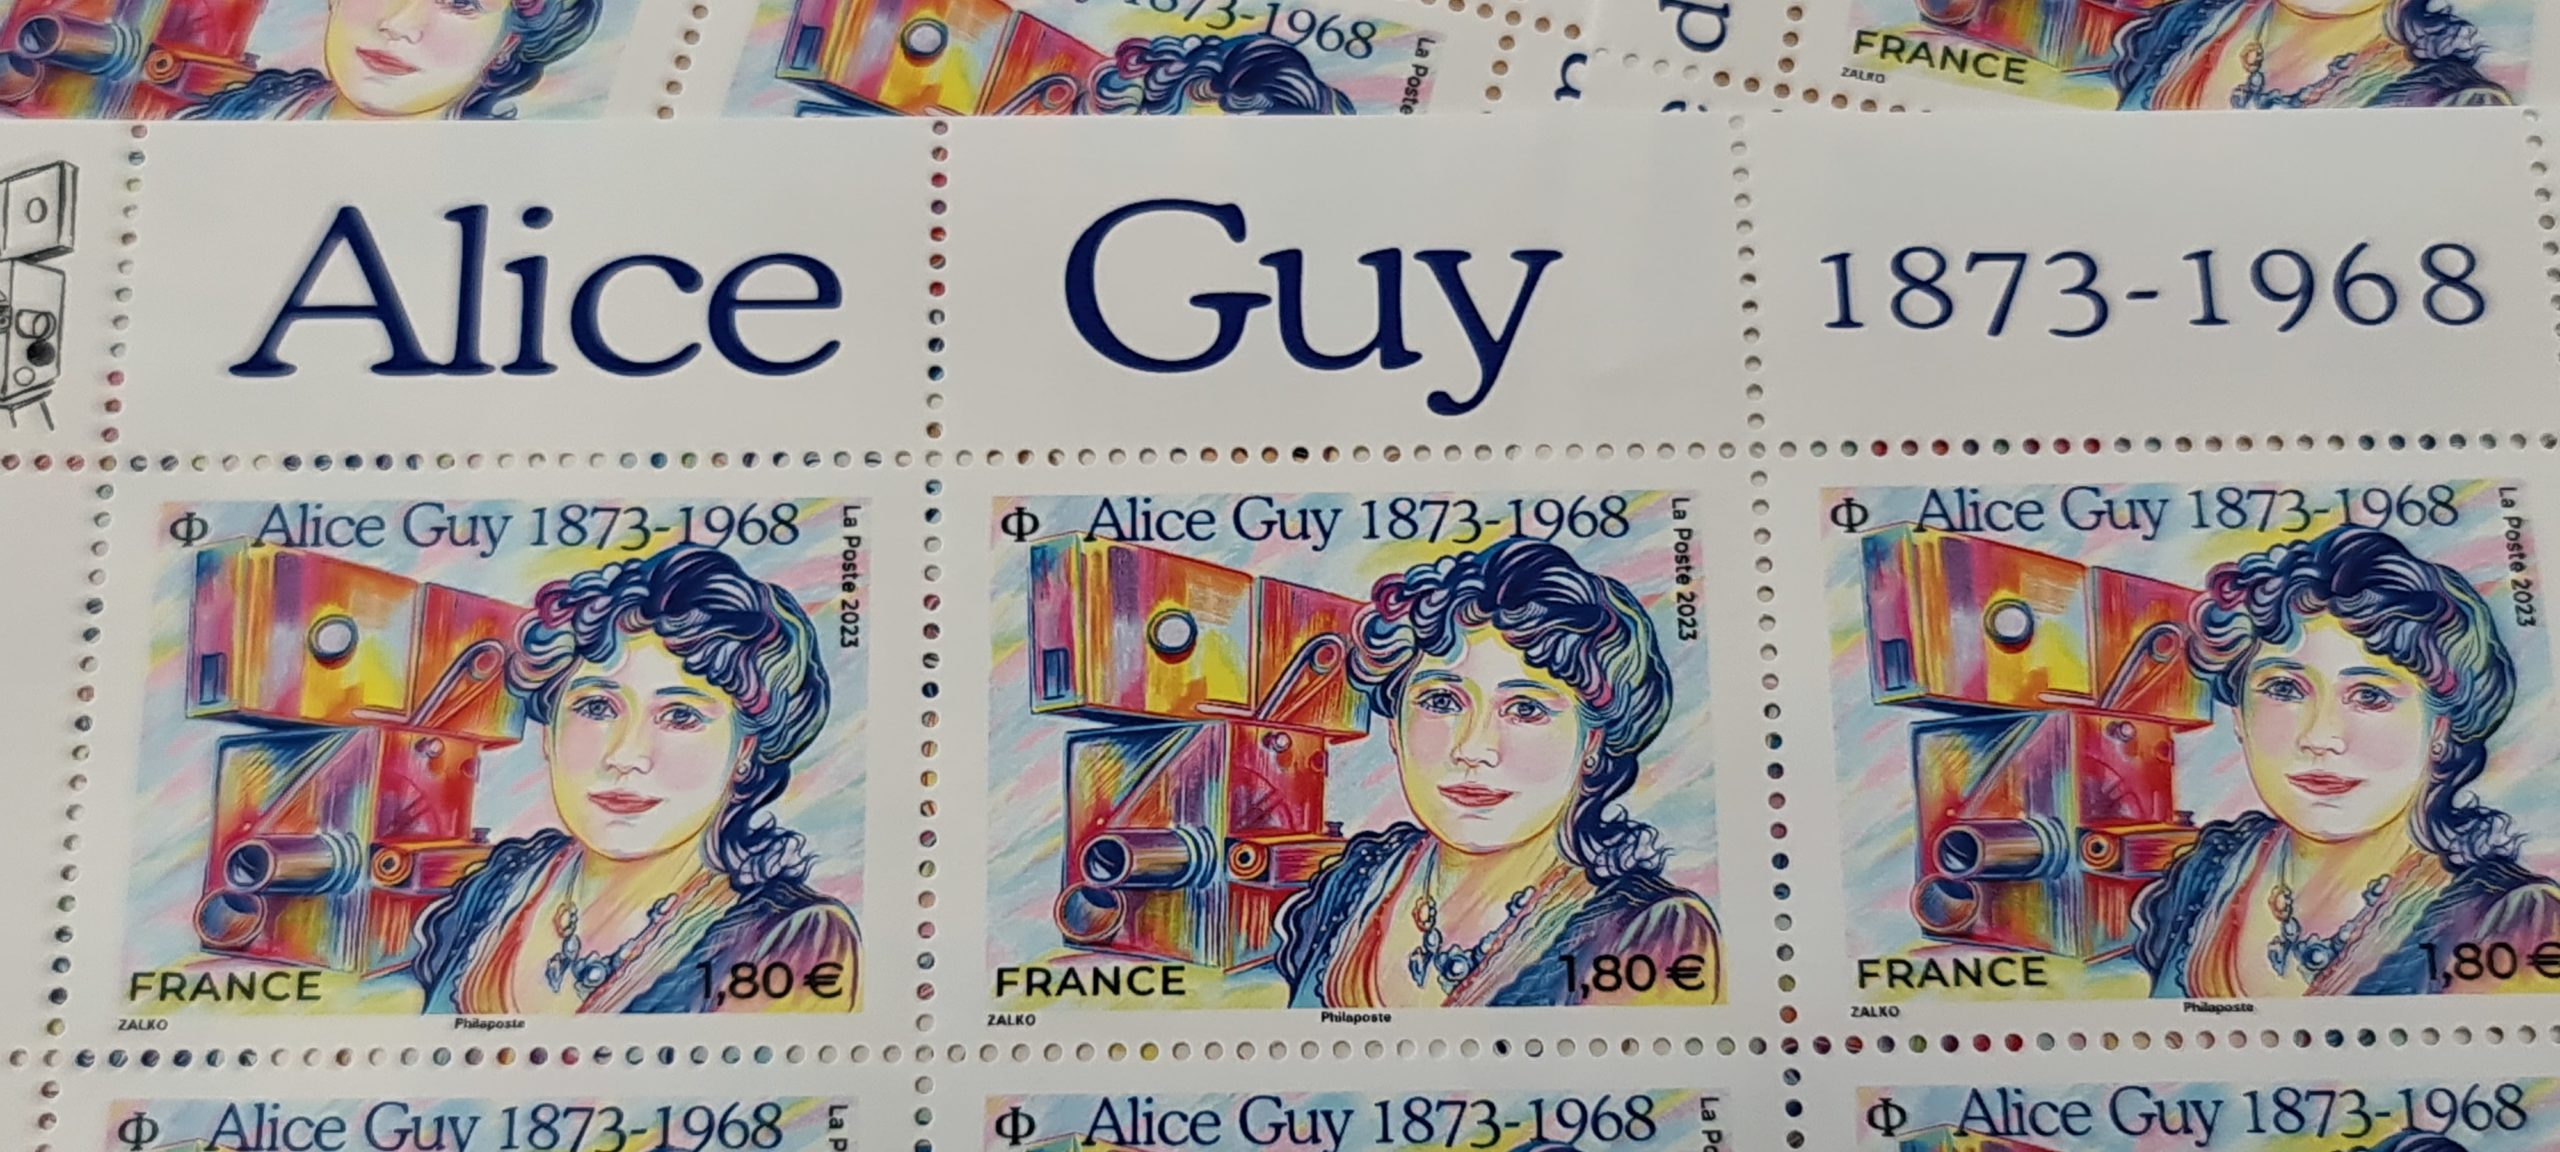 Le timbre Alice Guy - prixaliceguy.com